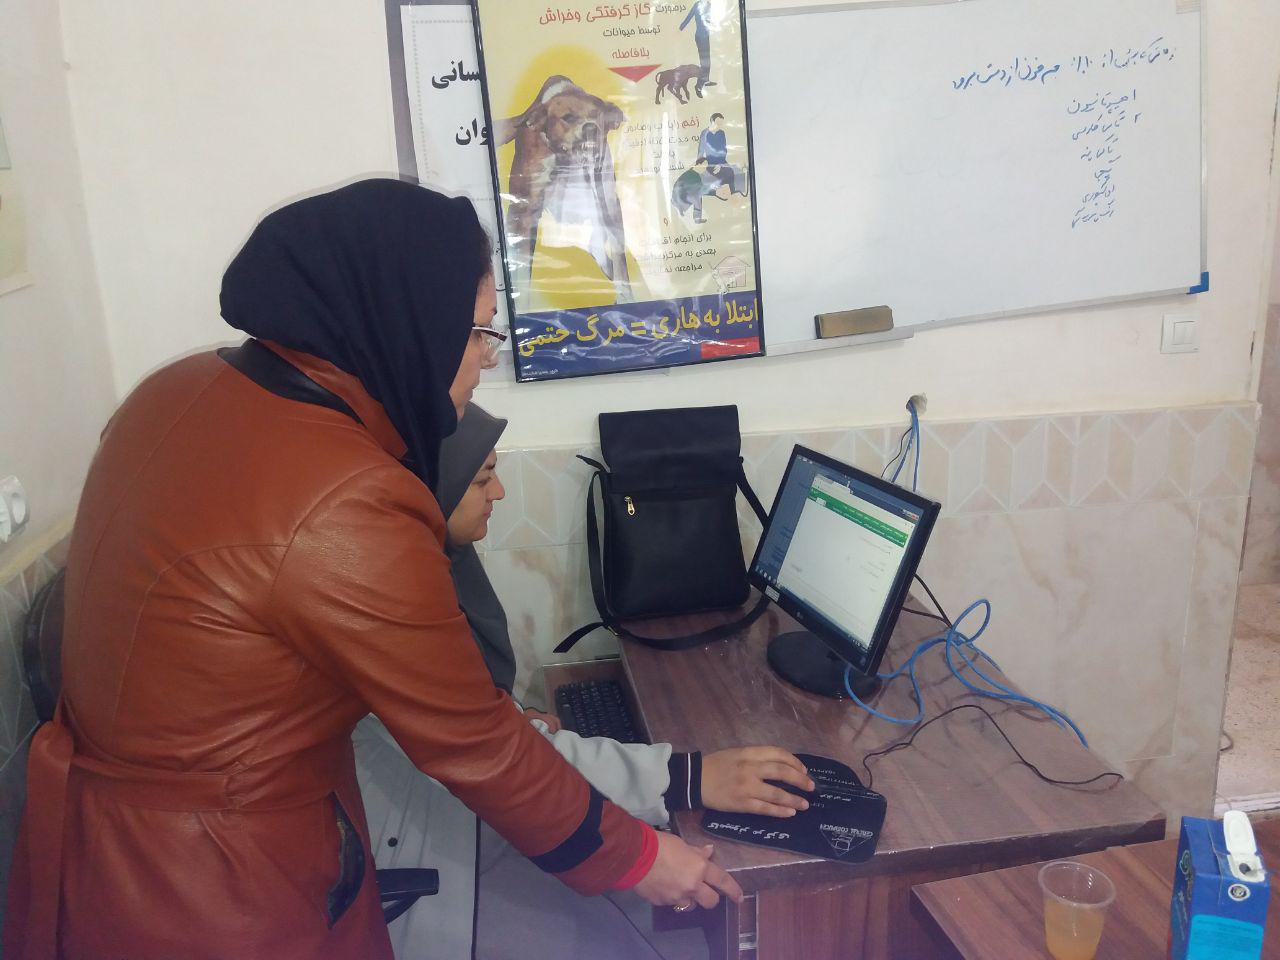 نصب مودم و ارتباط اینترنت خانه بهداشت کال ایمانی از مرکز عشق آباد - مانه و سملقان - آشخانه